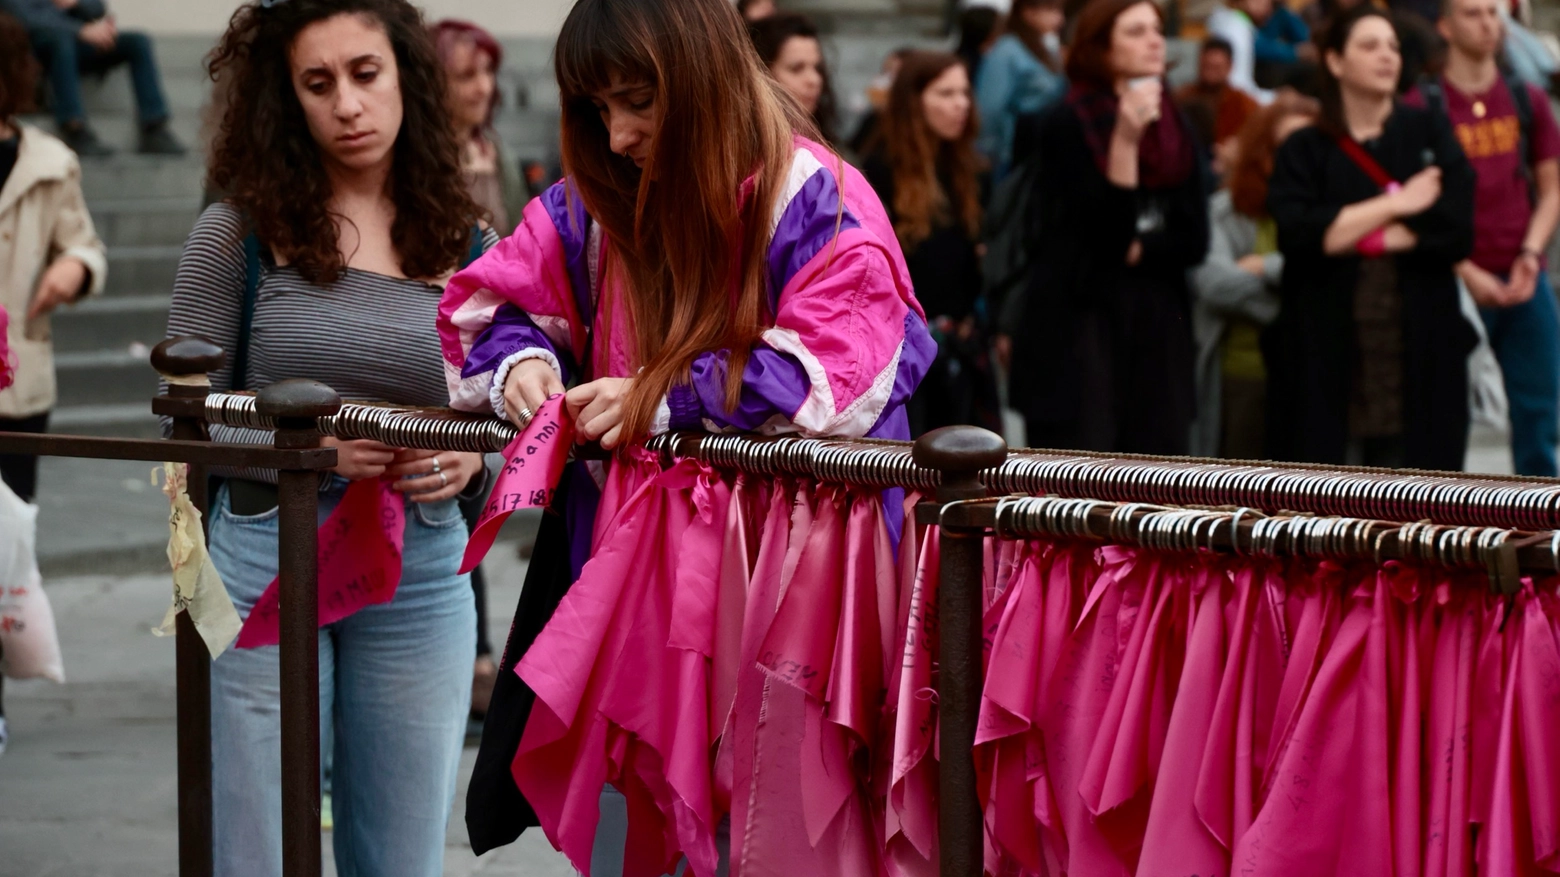 In piazza Santissima Annunziata la rete femminista ha ricordato le vittime di femminicidio e riparato l’installazione coi lucchetti e i pañuelos che era stata vandalizzata